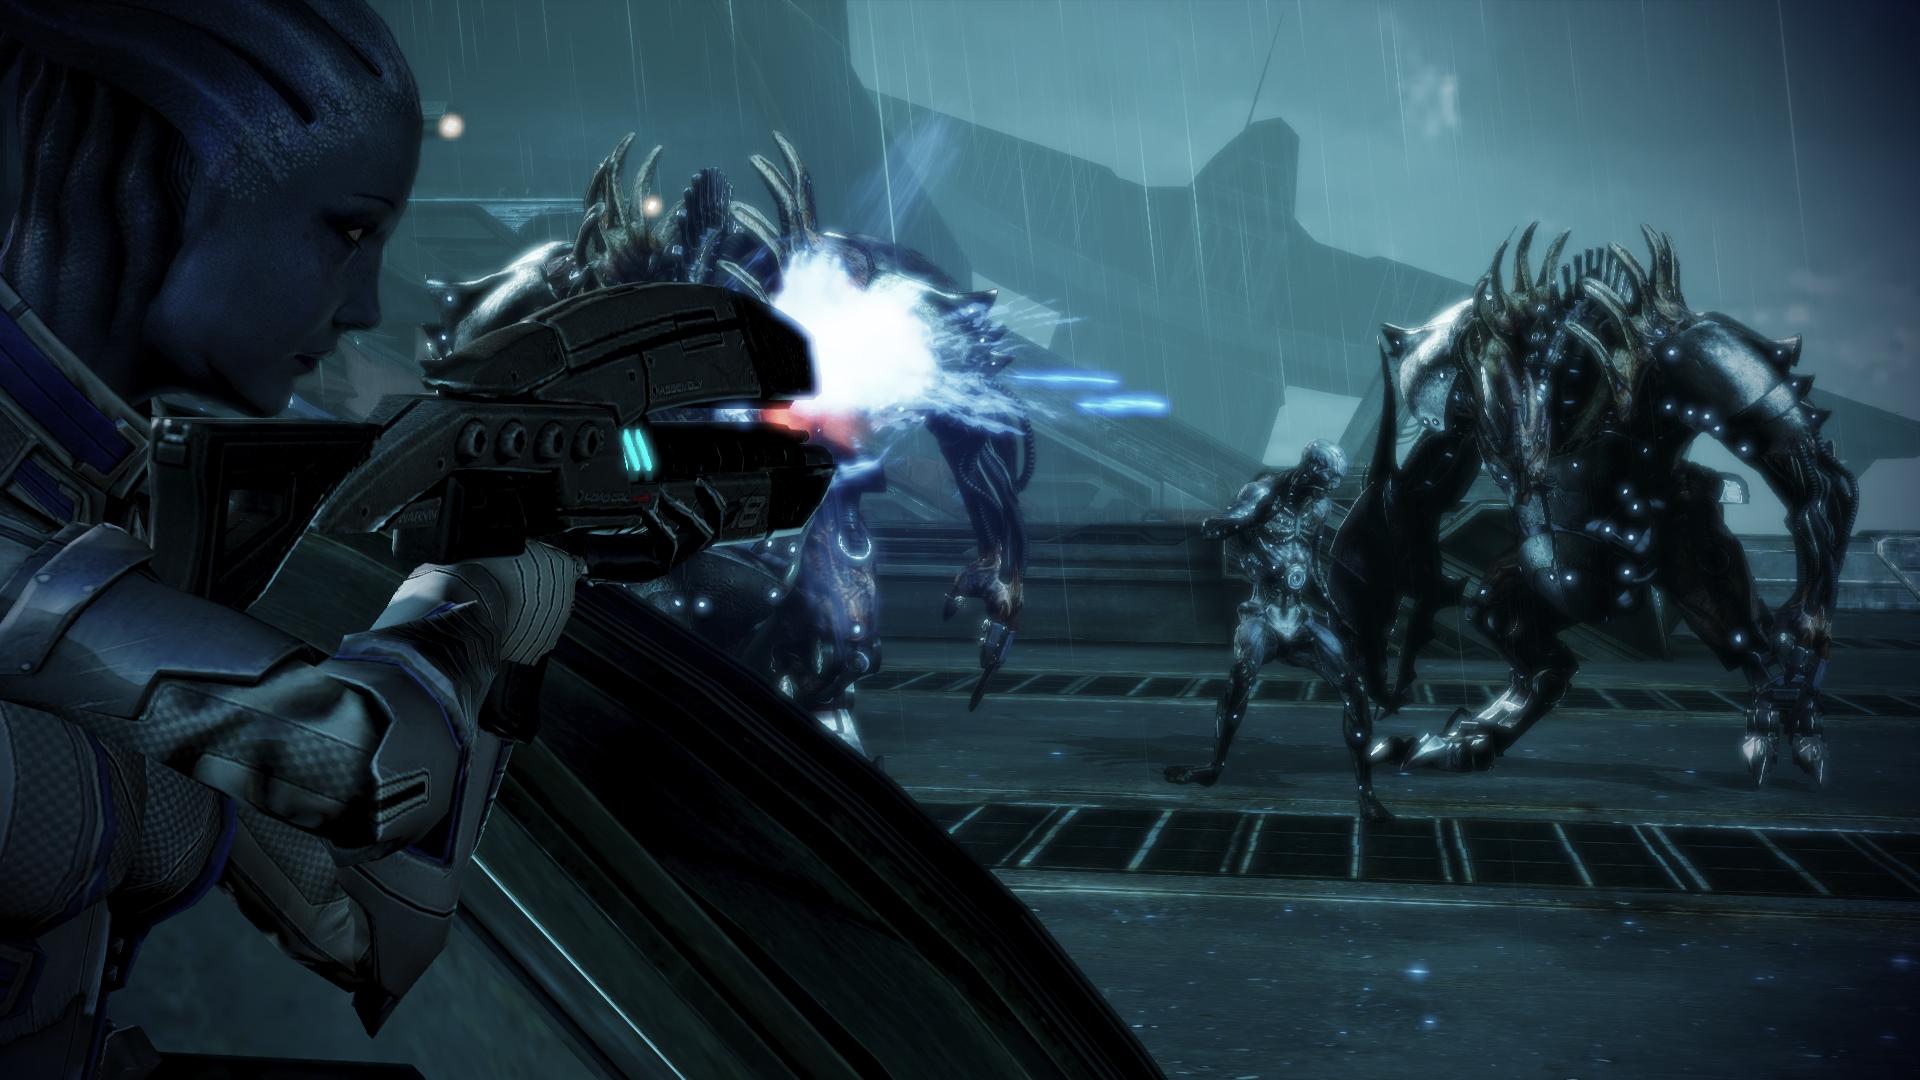 Descarga gratuita de fondo de pantalla para móvil de Mass Effect 3, Liara T'soni, Mass Effect, Videojuego.